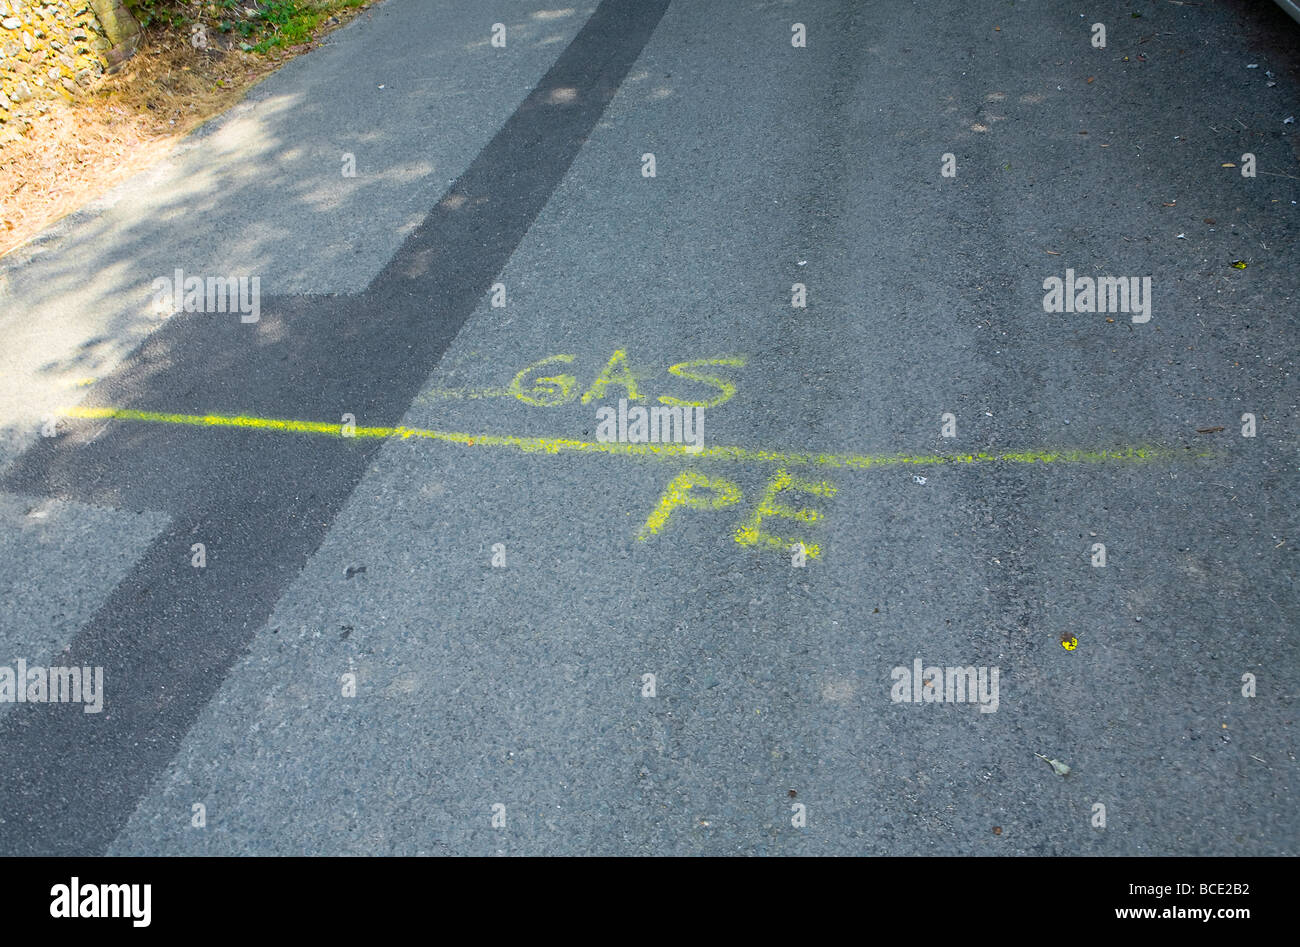 Vernice gialla su strada che indica dove sarà posato il tubo del gas (vernice gialla indica tutte le cose da fare con il gas) Regno Unito Foto Stock